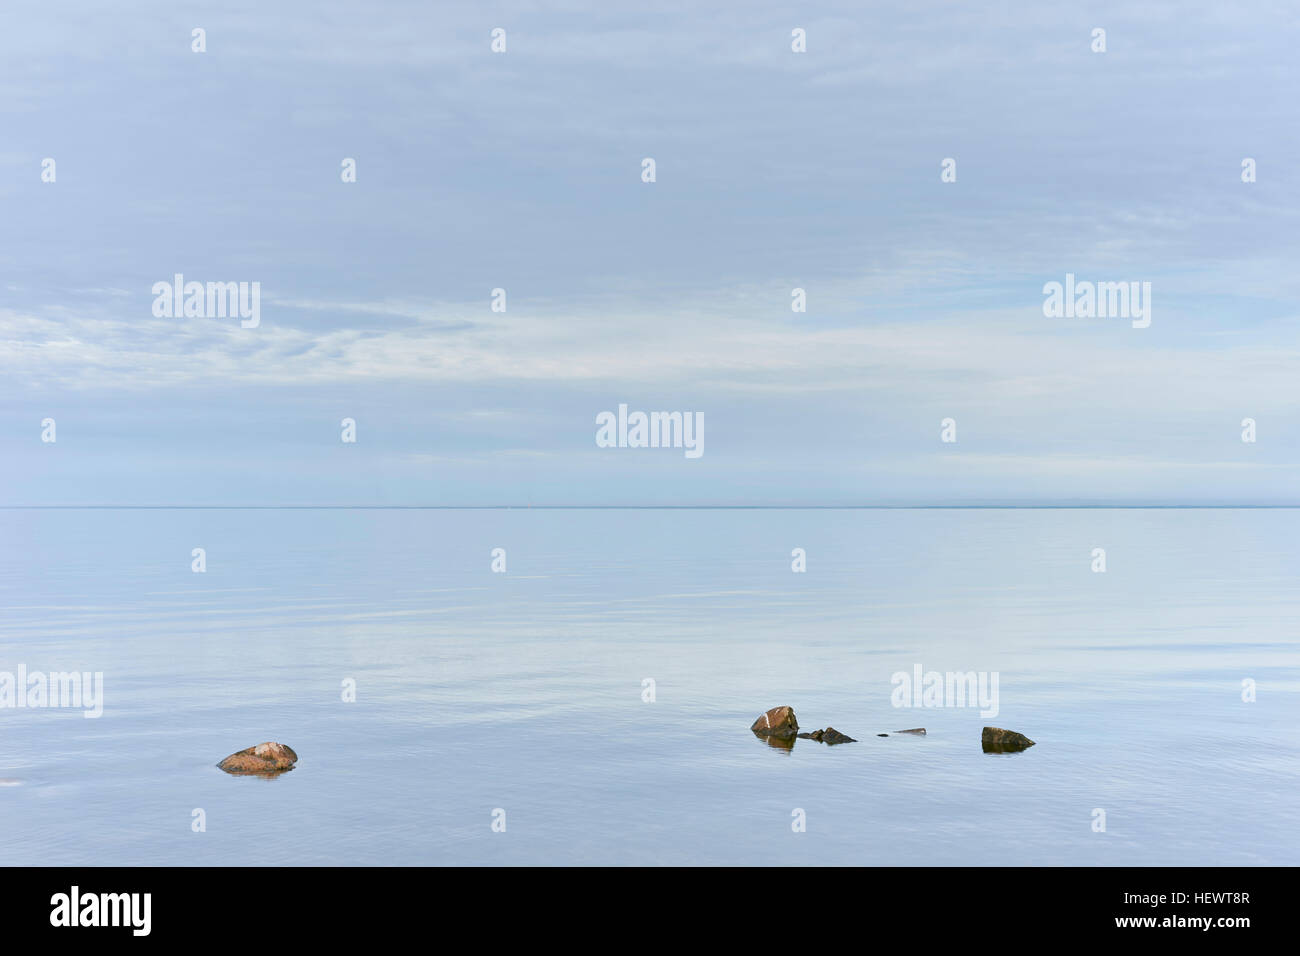 Les rochers qui dépassent de la mer toujours, Aland, Kalmar, Suède Banque D'Images